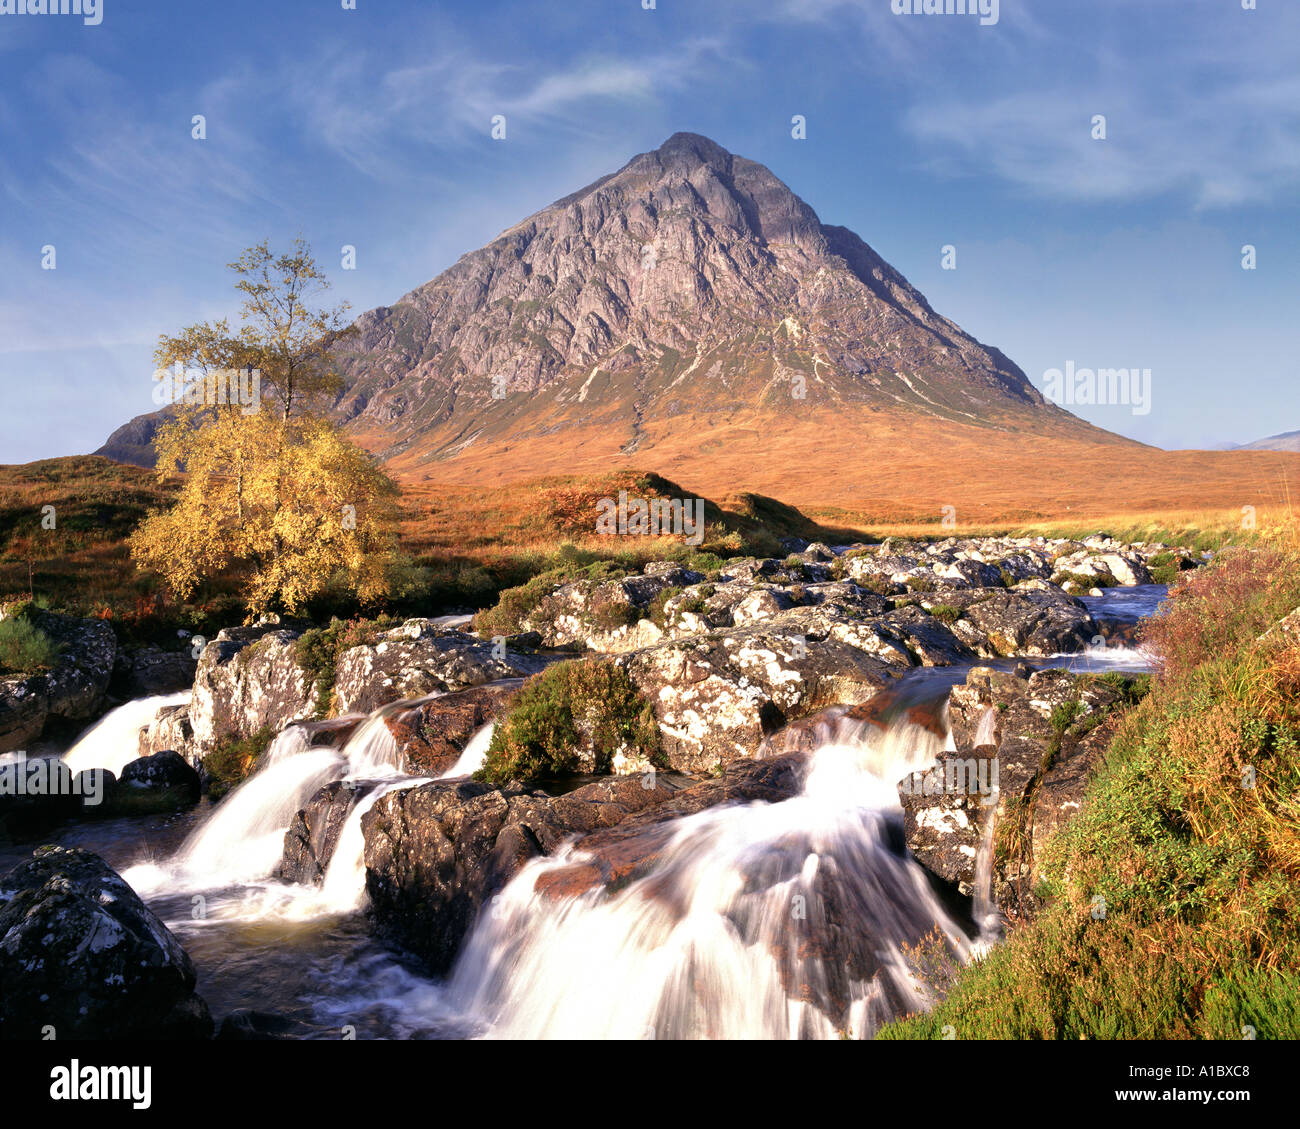 GB - Scozia: Cascate del Fiume Etive e Buchaille Etive Foto Stock